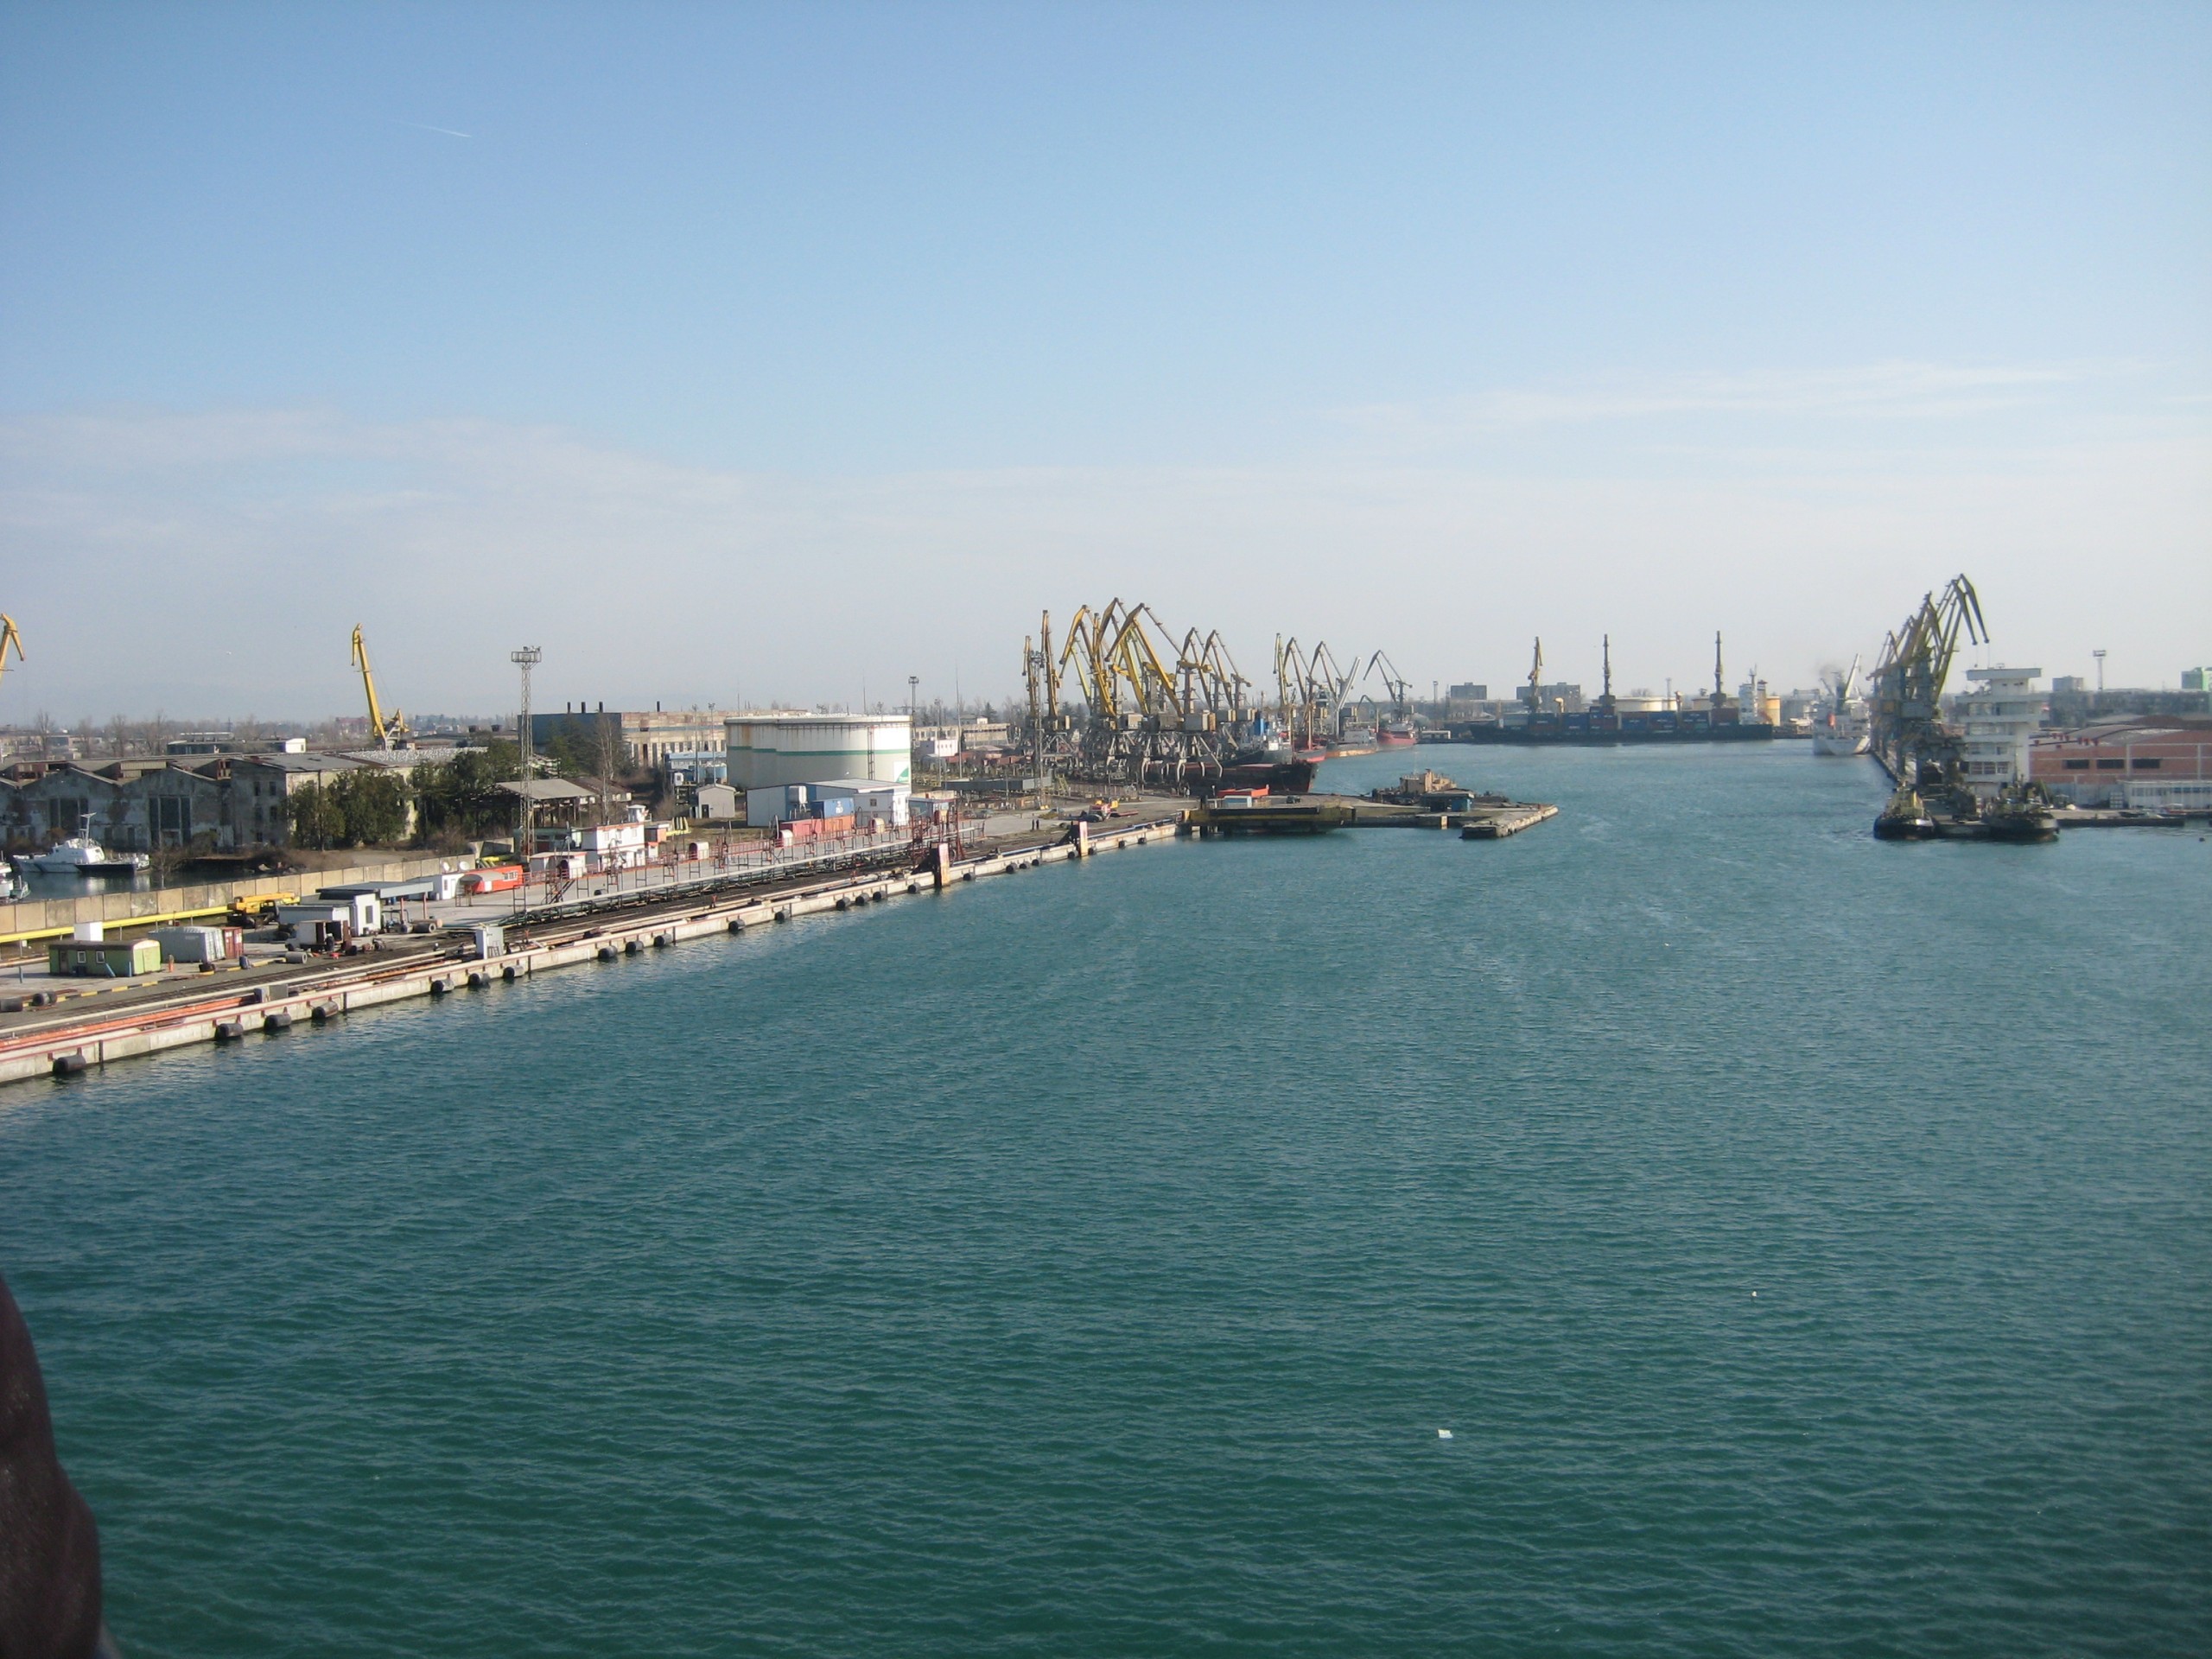 Foto: (https://en.wikipedia.org/wiki/Poti_Sea_Port#/media/File:Port_of_Poti_-_panoramio.jpg)